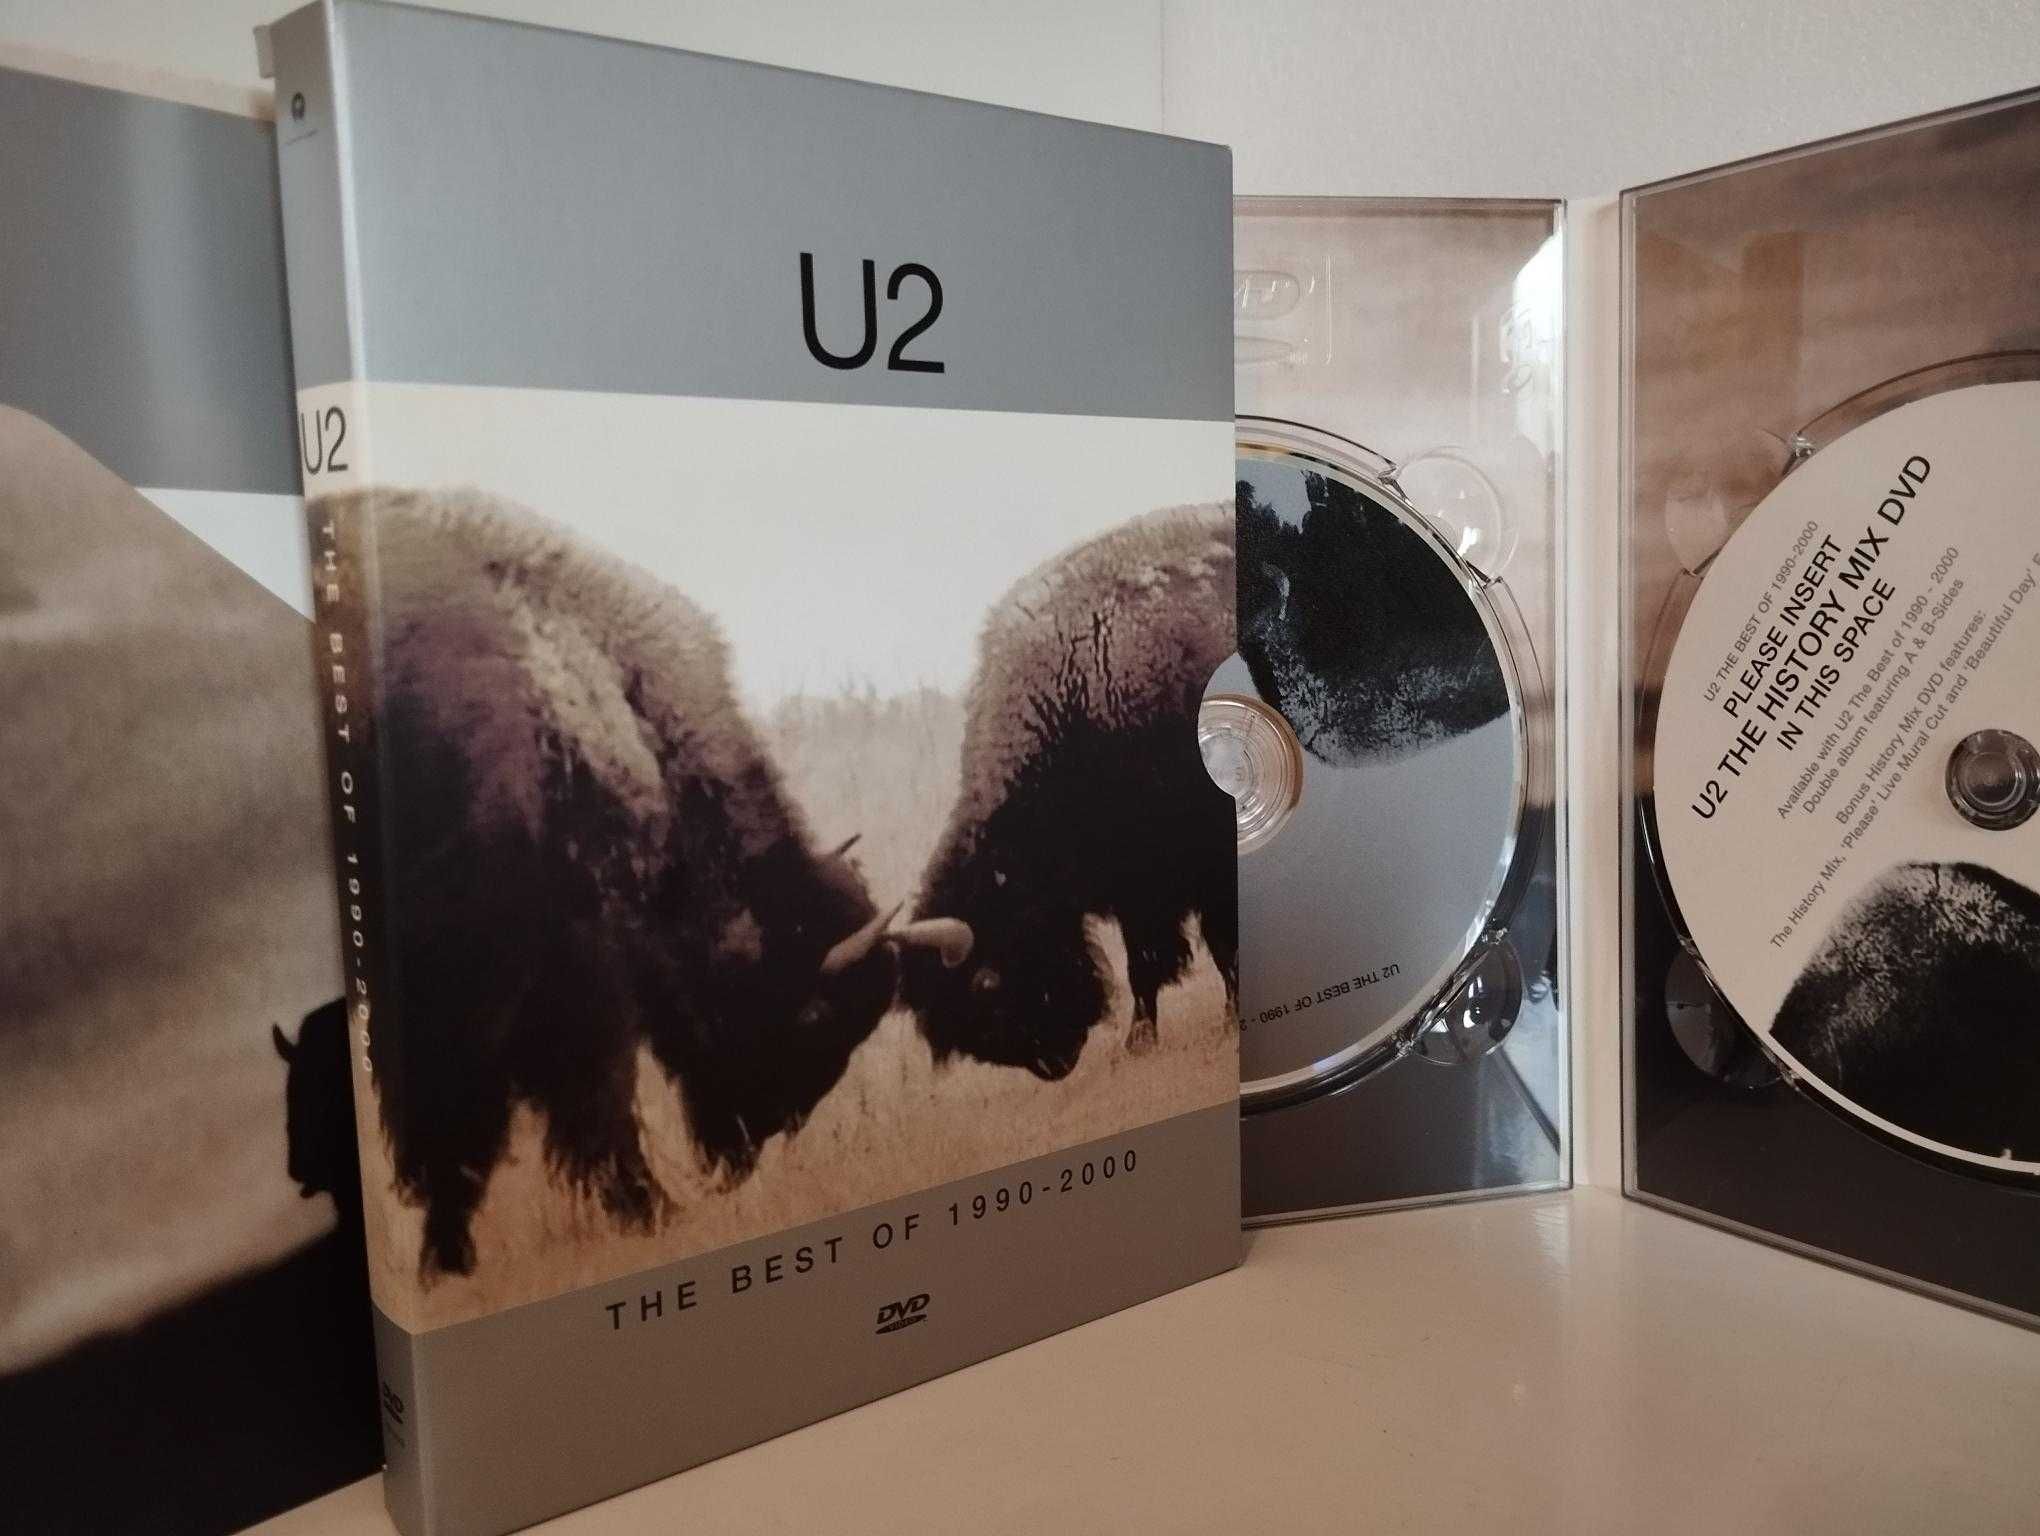 U2 - DVD Best of, edição especial